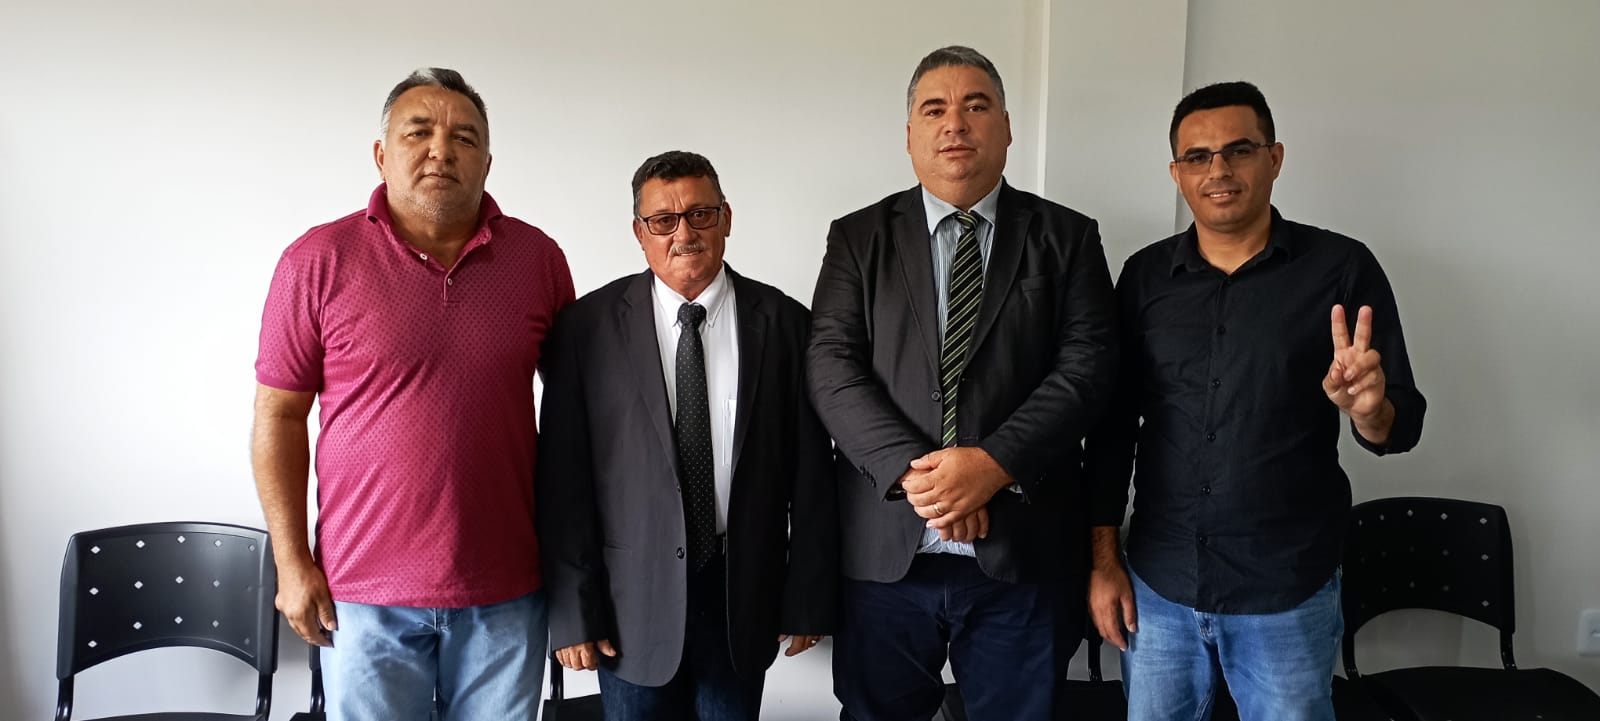 João Alexandre e a mesa diretora são os primeiros na historia do legislativo cerrocoraense eleitos por unanimidade com votos da oposição e situação.